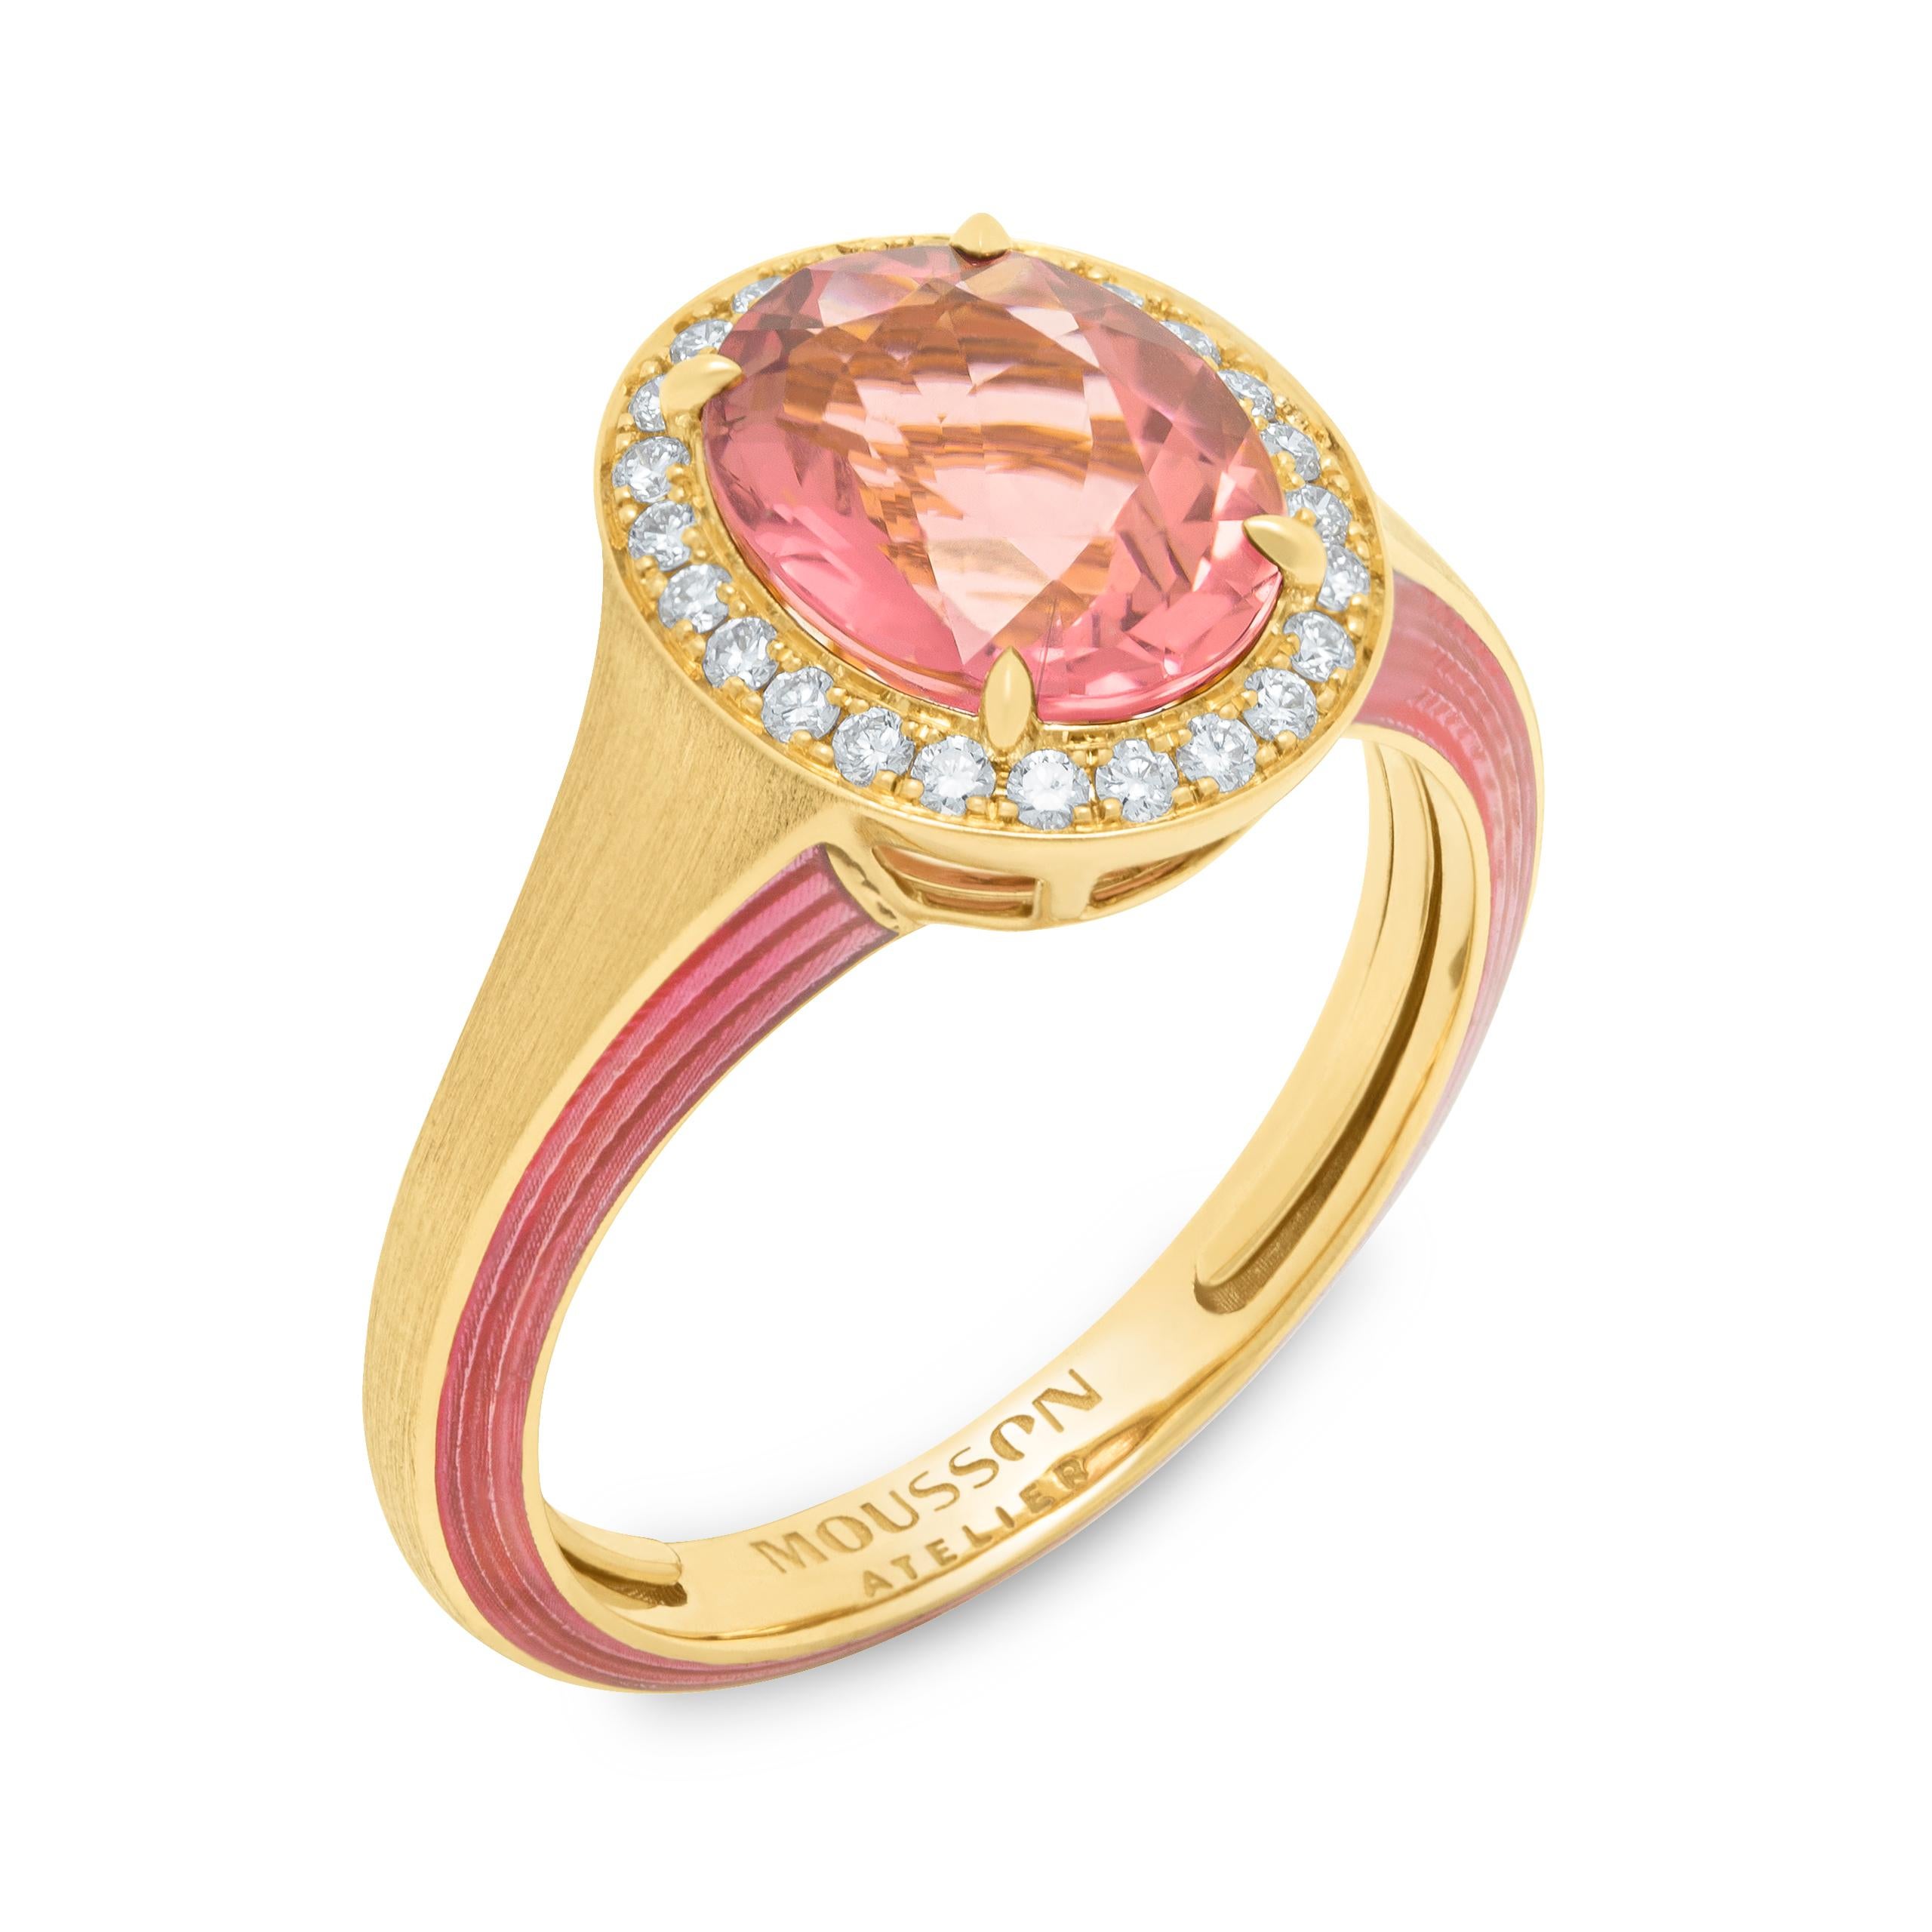 Rosa Turmalin 2,49 Karat Diamanten 18 Karat Gelbgold Emaille New Classic Ring
Wir haben eine Reihe von neuen Ringen mit der gleichen IDEA, aber mit anderen Details veröffentlicht. Wir präsentieren einen Ring aus 18 Karat Gelbgold, der zusammen mit